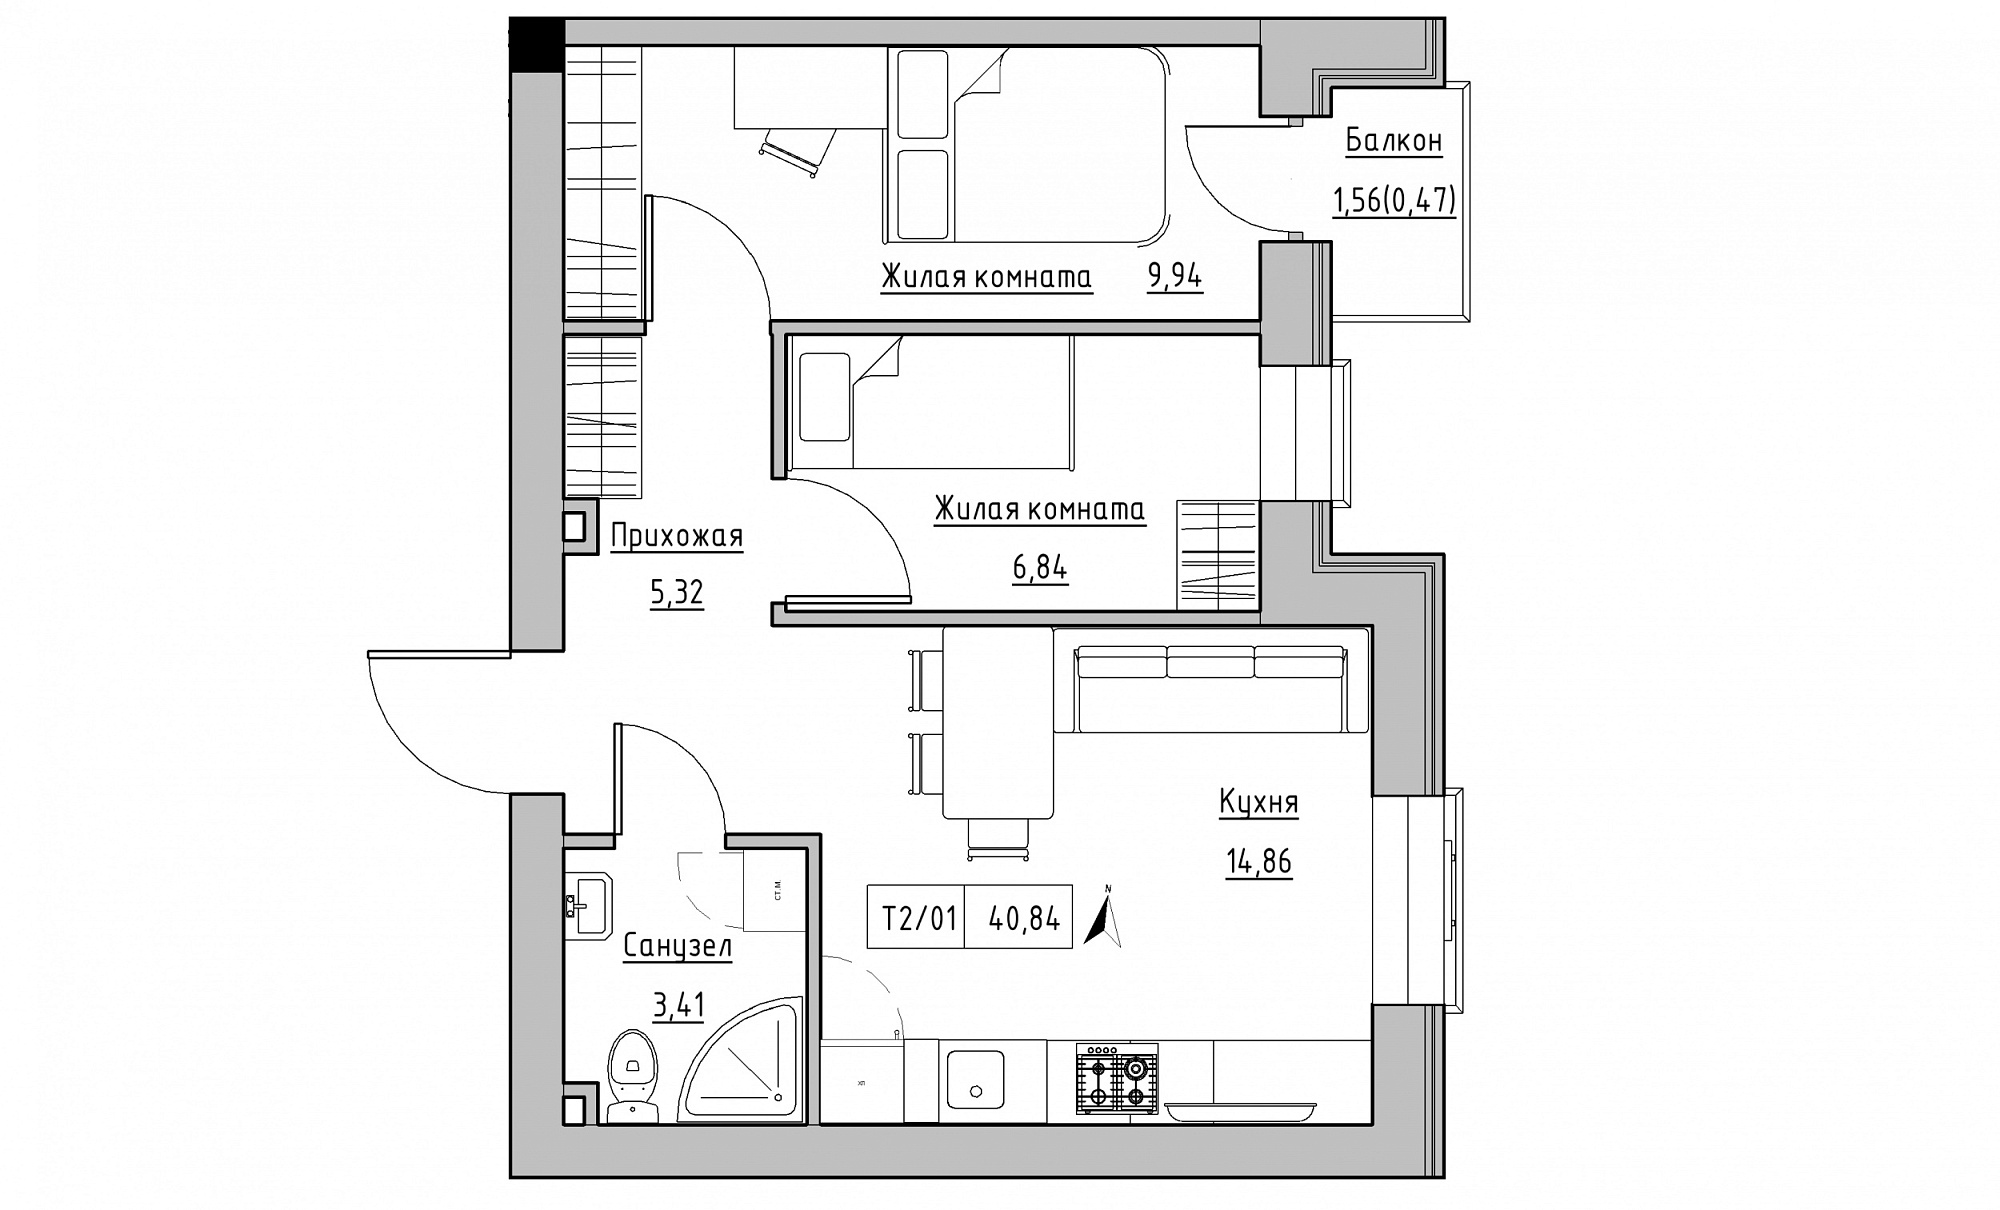 Планировка 2-к квартира площей 40.84м2, KS-015-03/0006.